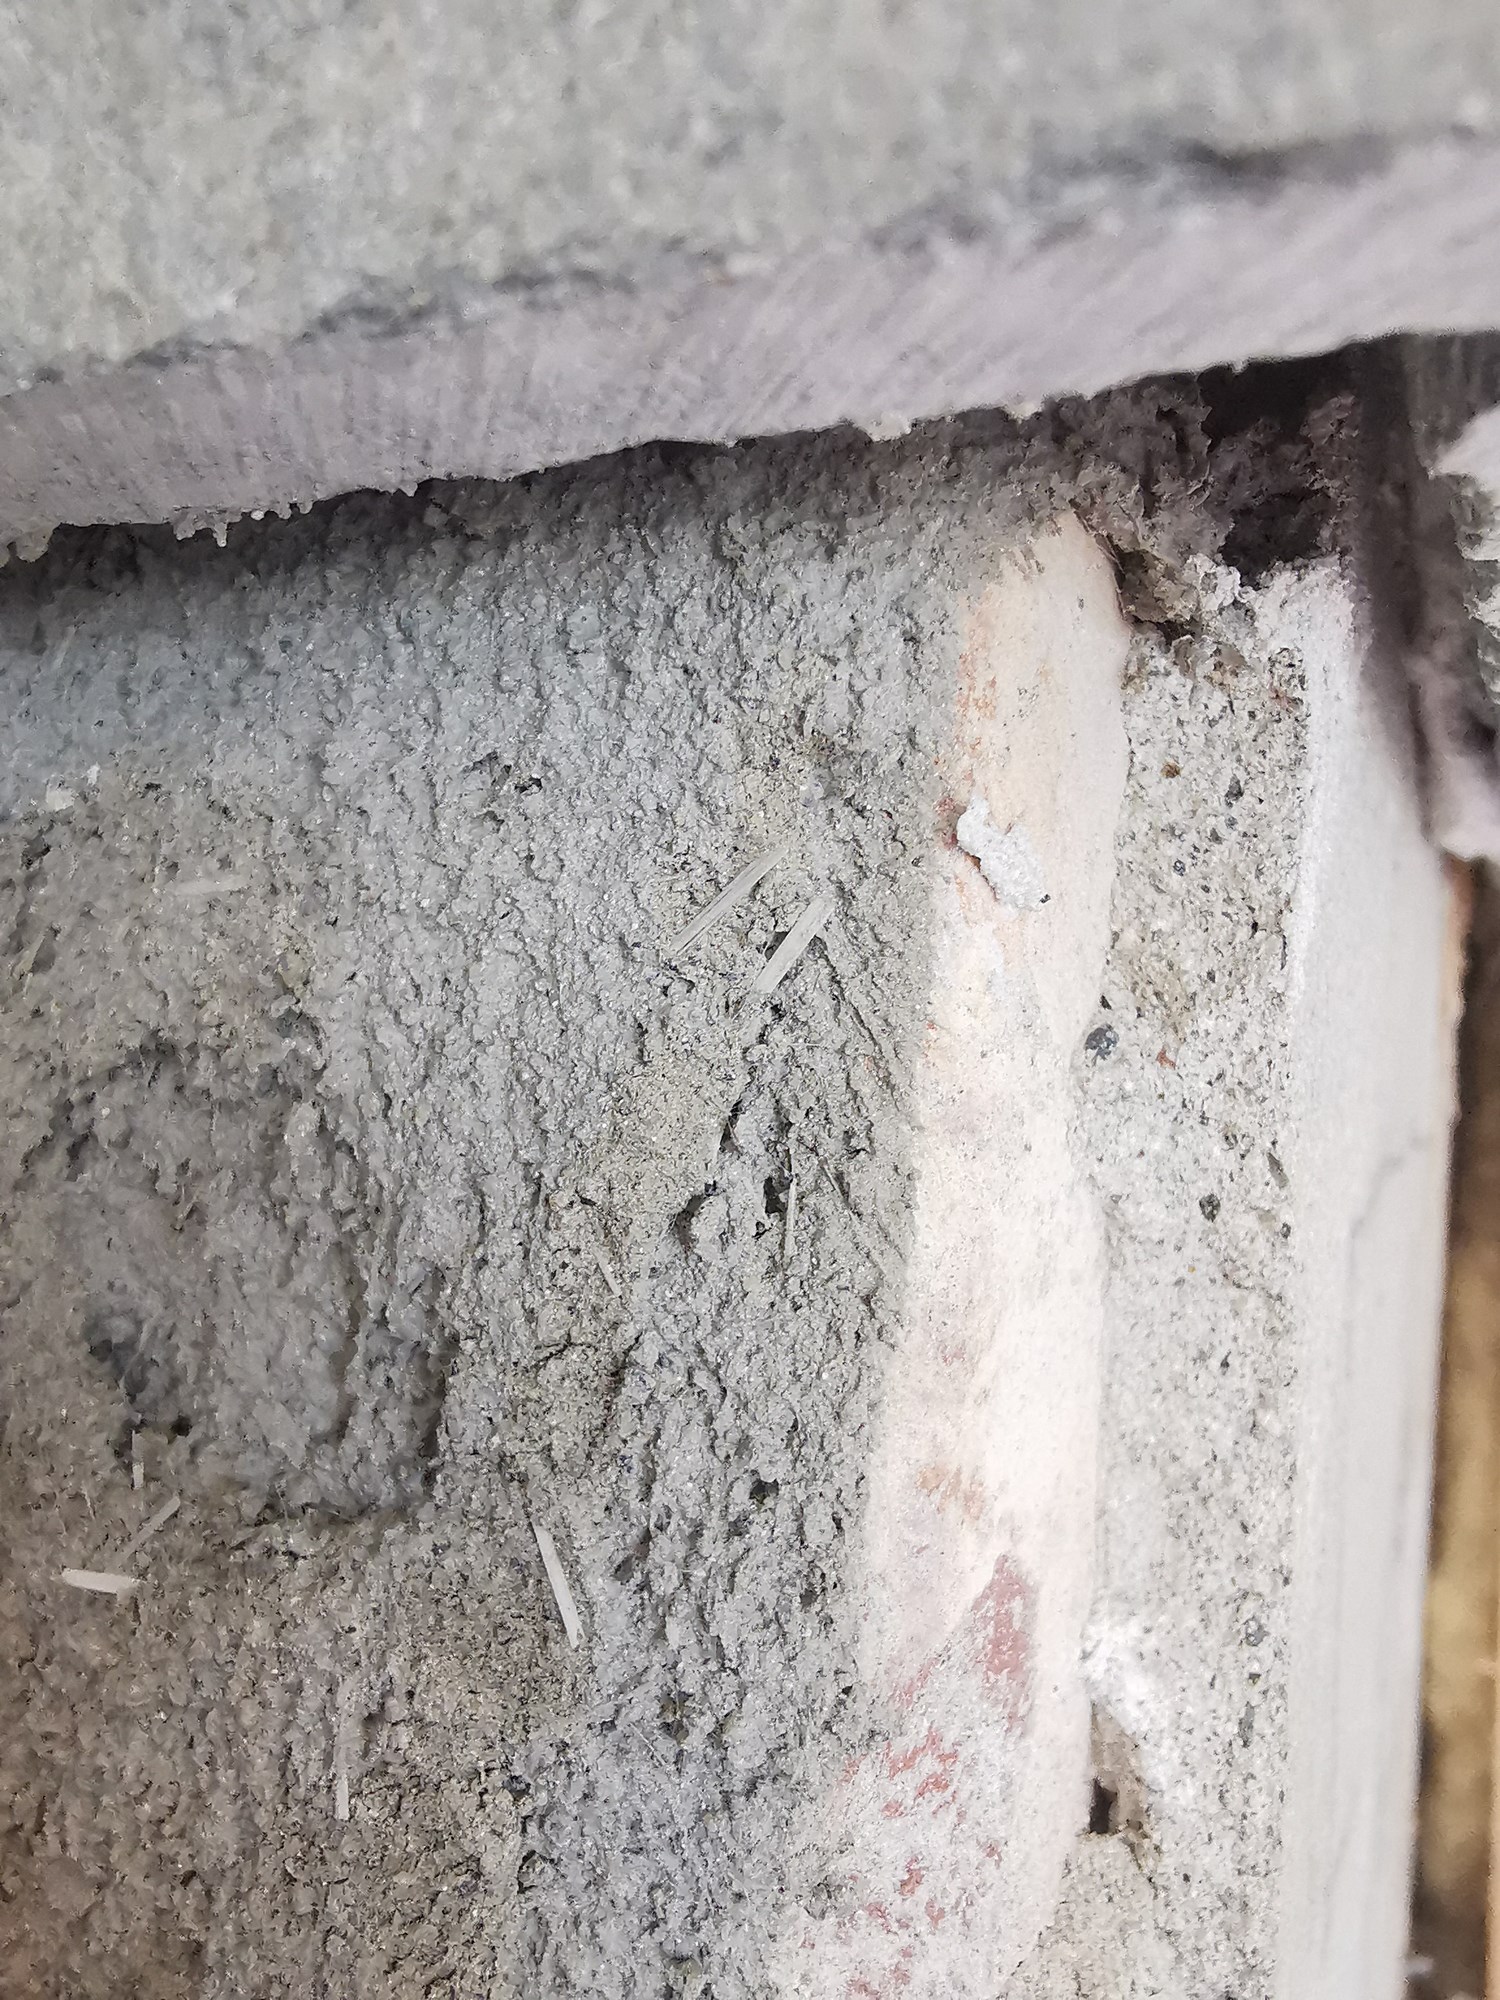 Glassvatt el asbest rundt mur rundt peis? - IMG_20220316_121406.jpg - Mbn34